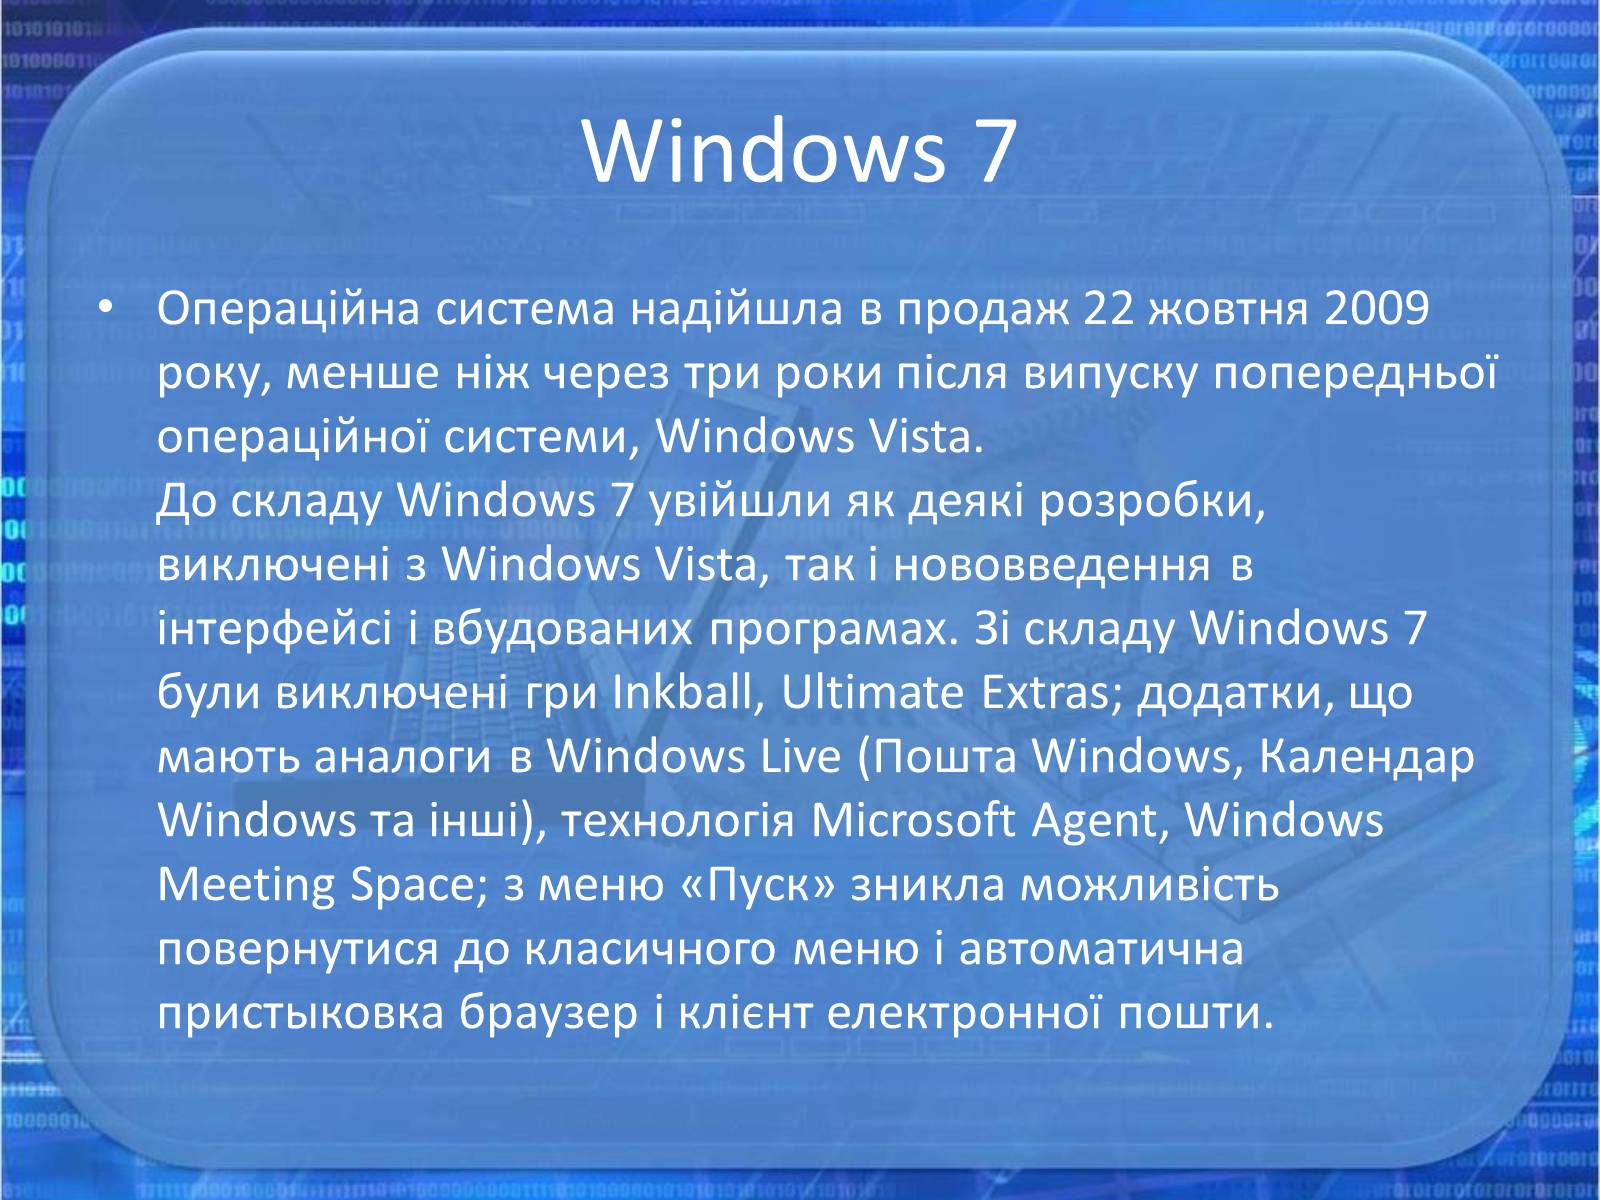 Когда появился виндовс. История создания виндовс. История создания операционной системы Windows. История создания виндовс 7. Операционная система Windows история.